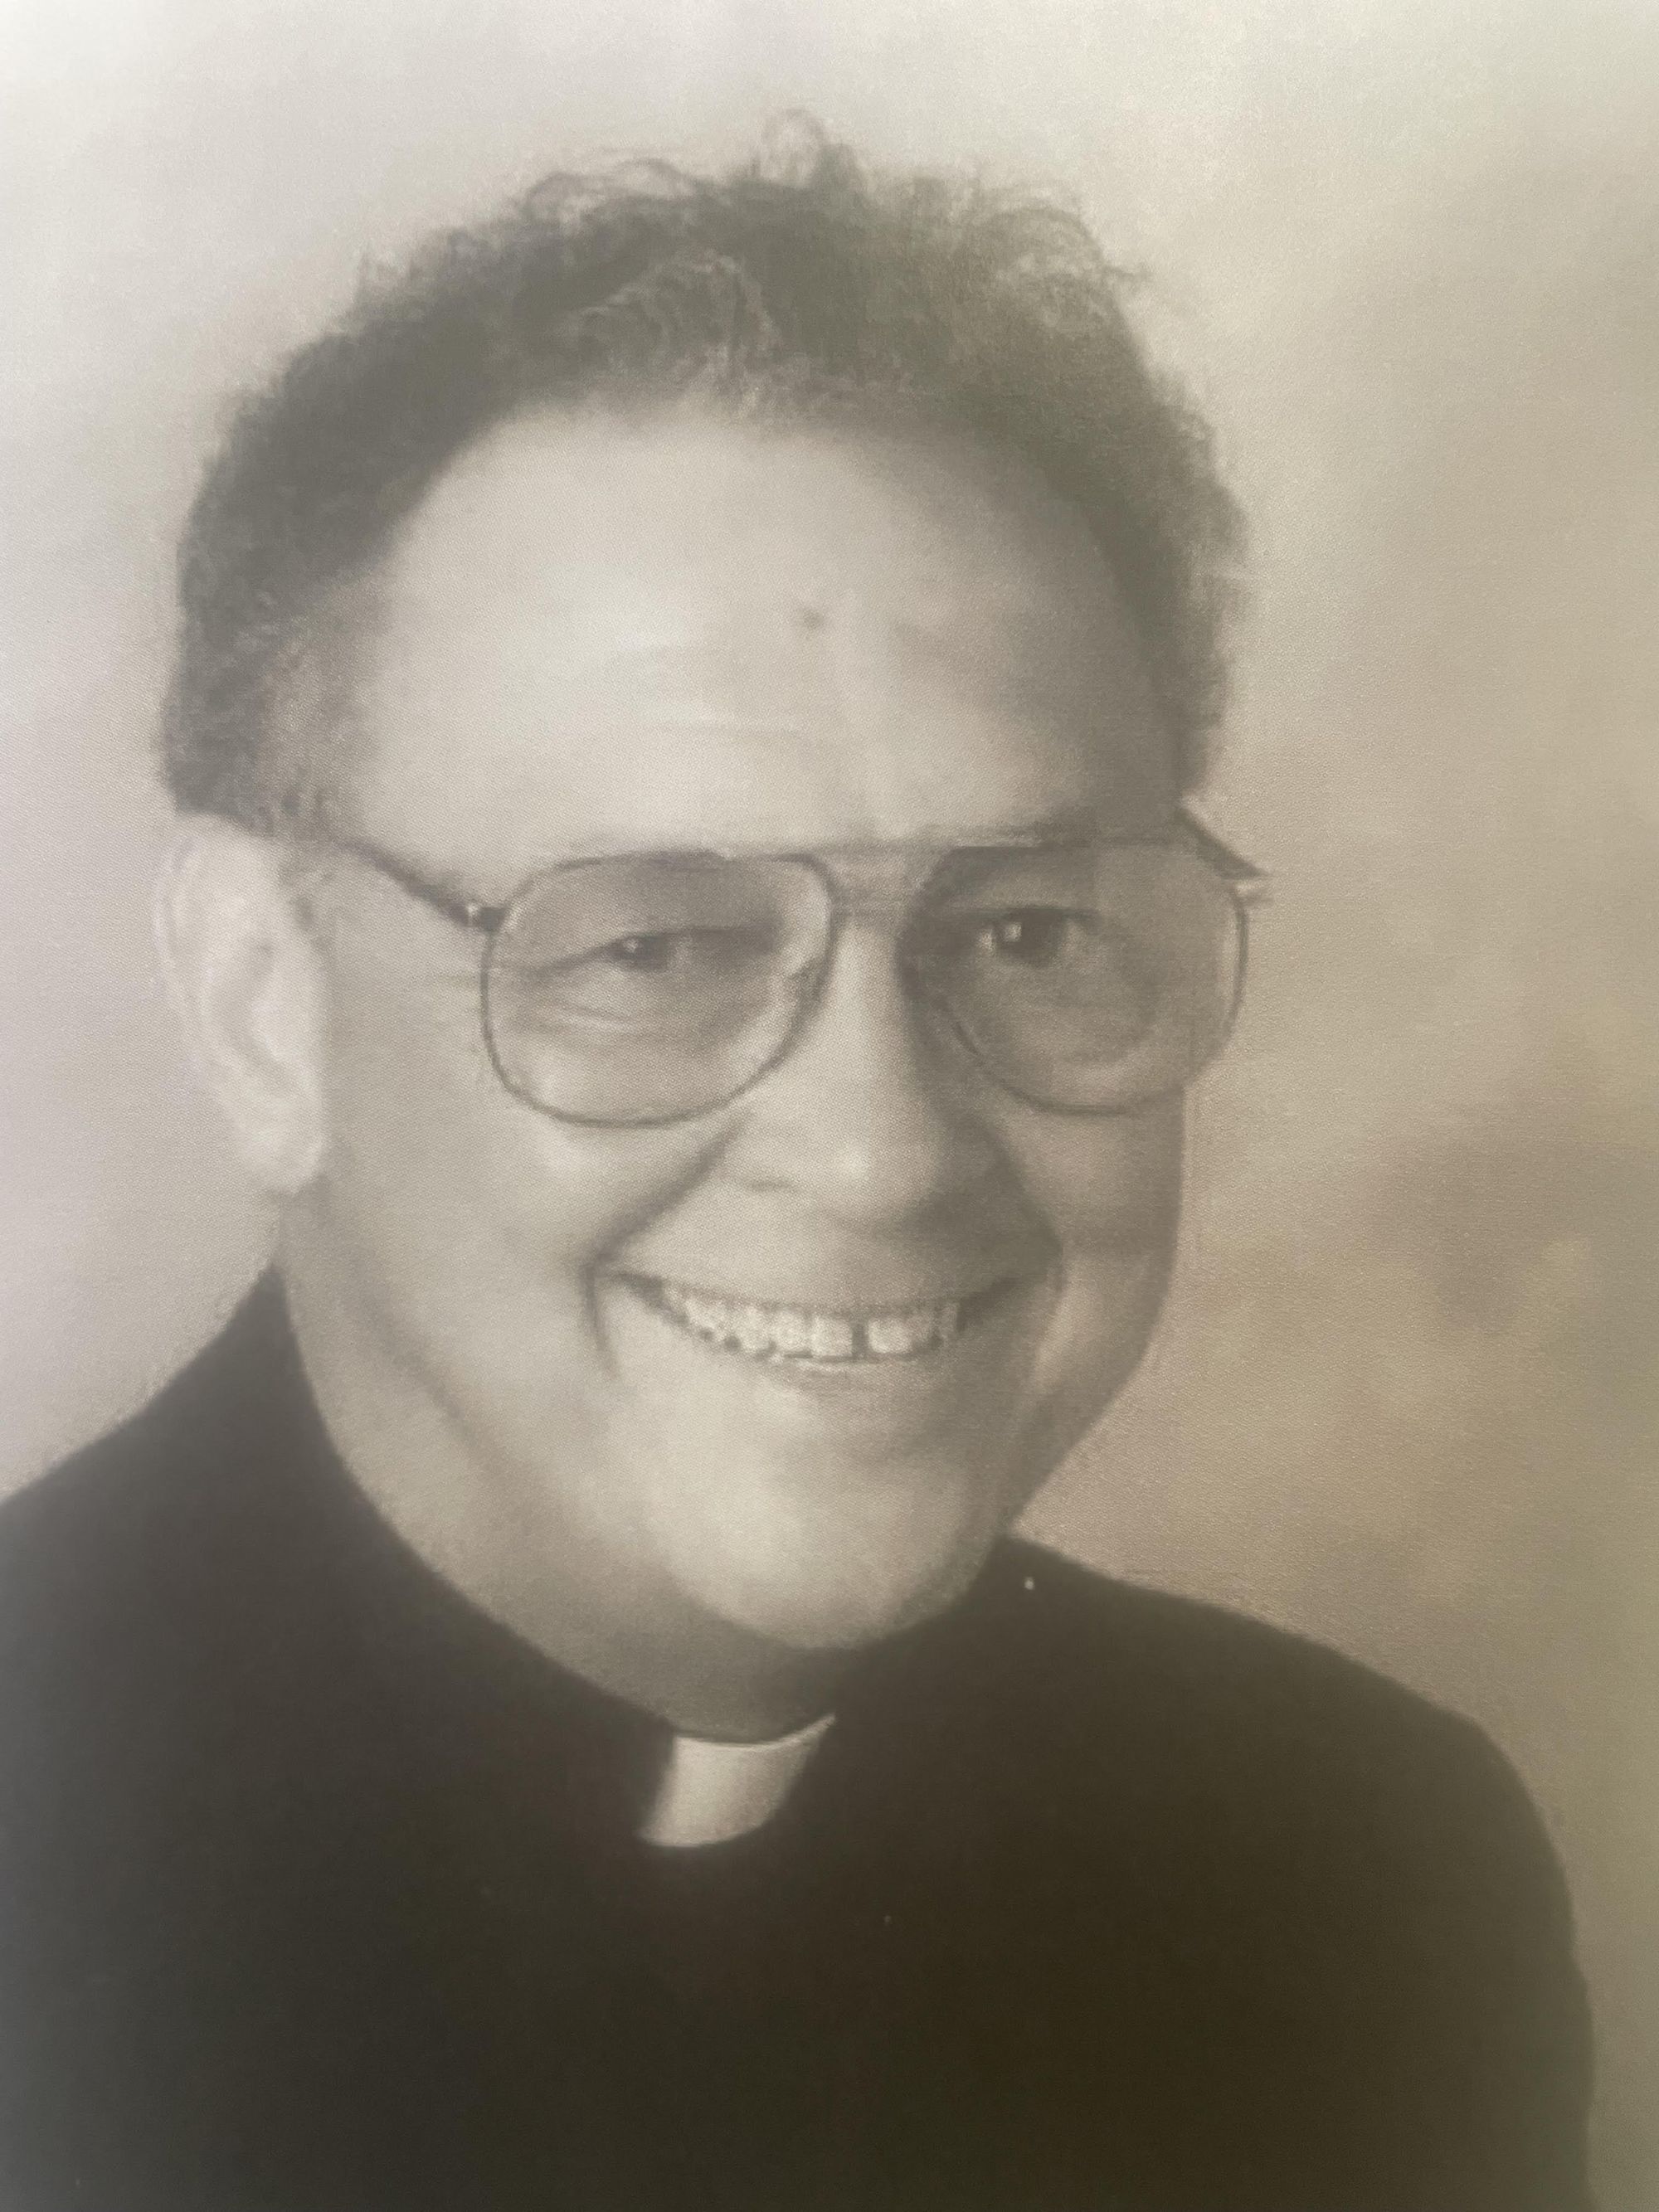 Fr Charles D. Burns, SVD dead at 90